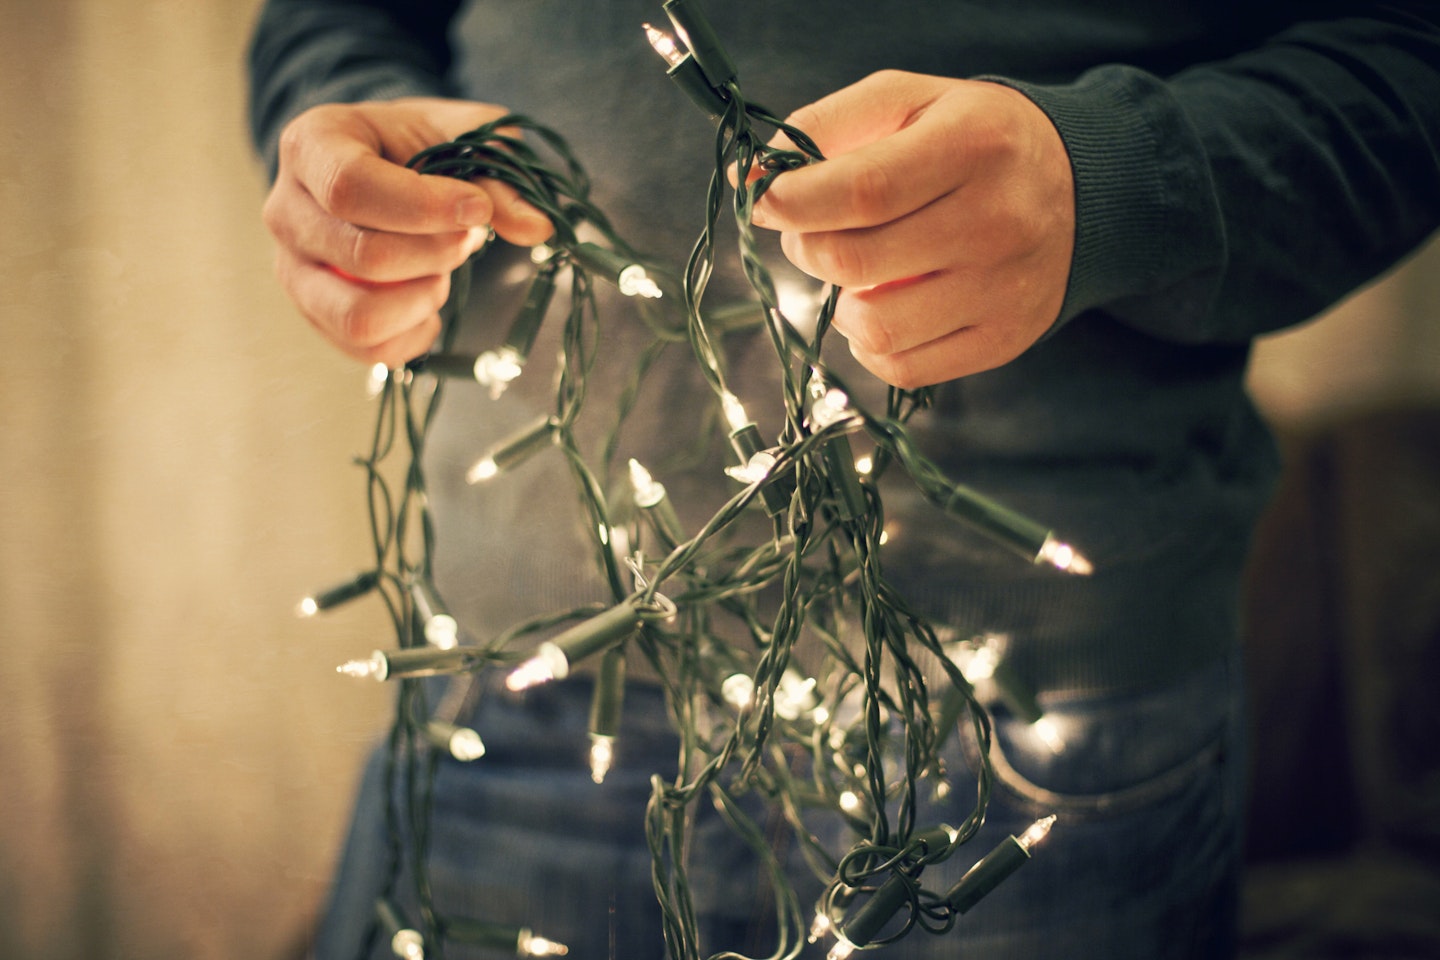 Traditional Christmas decorations: Christmas lights